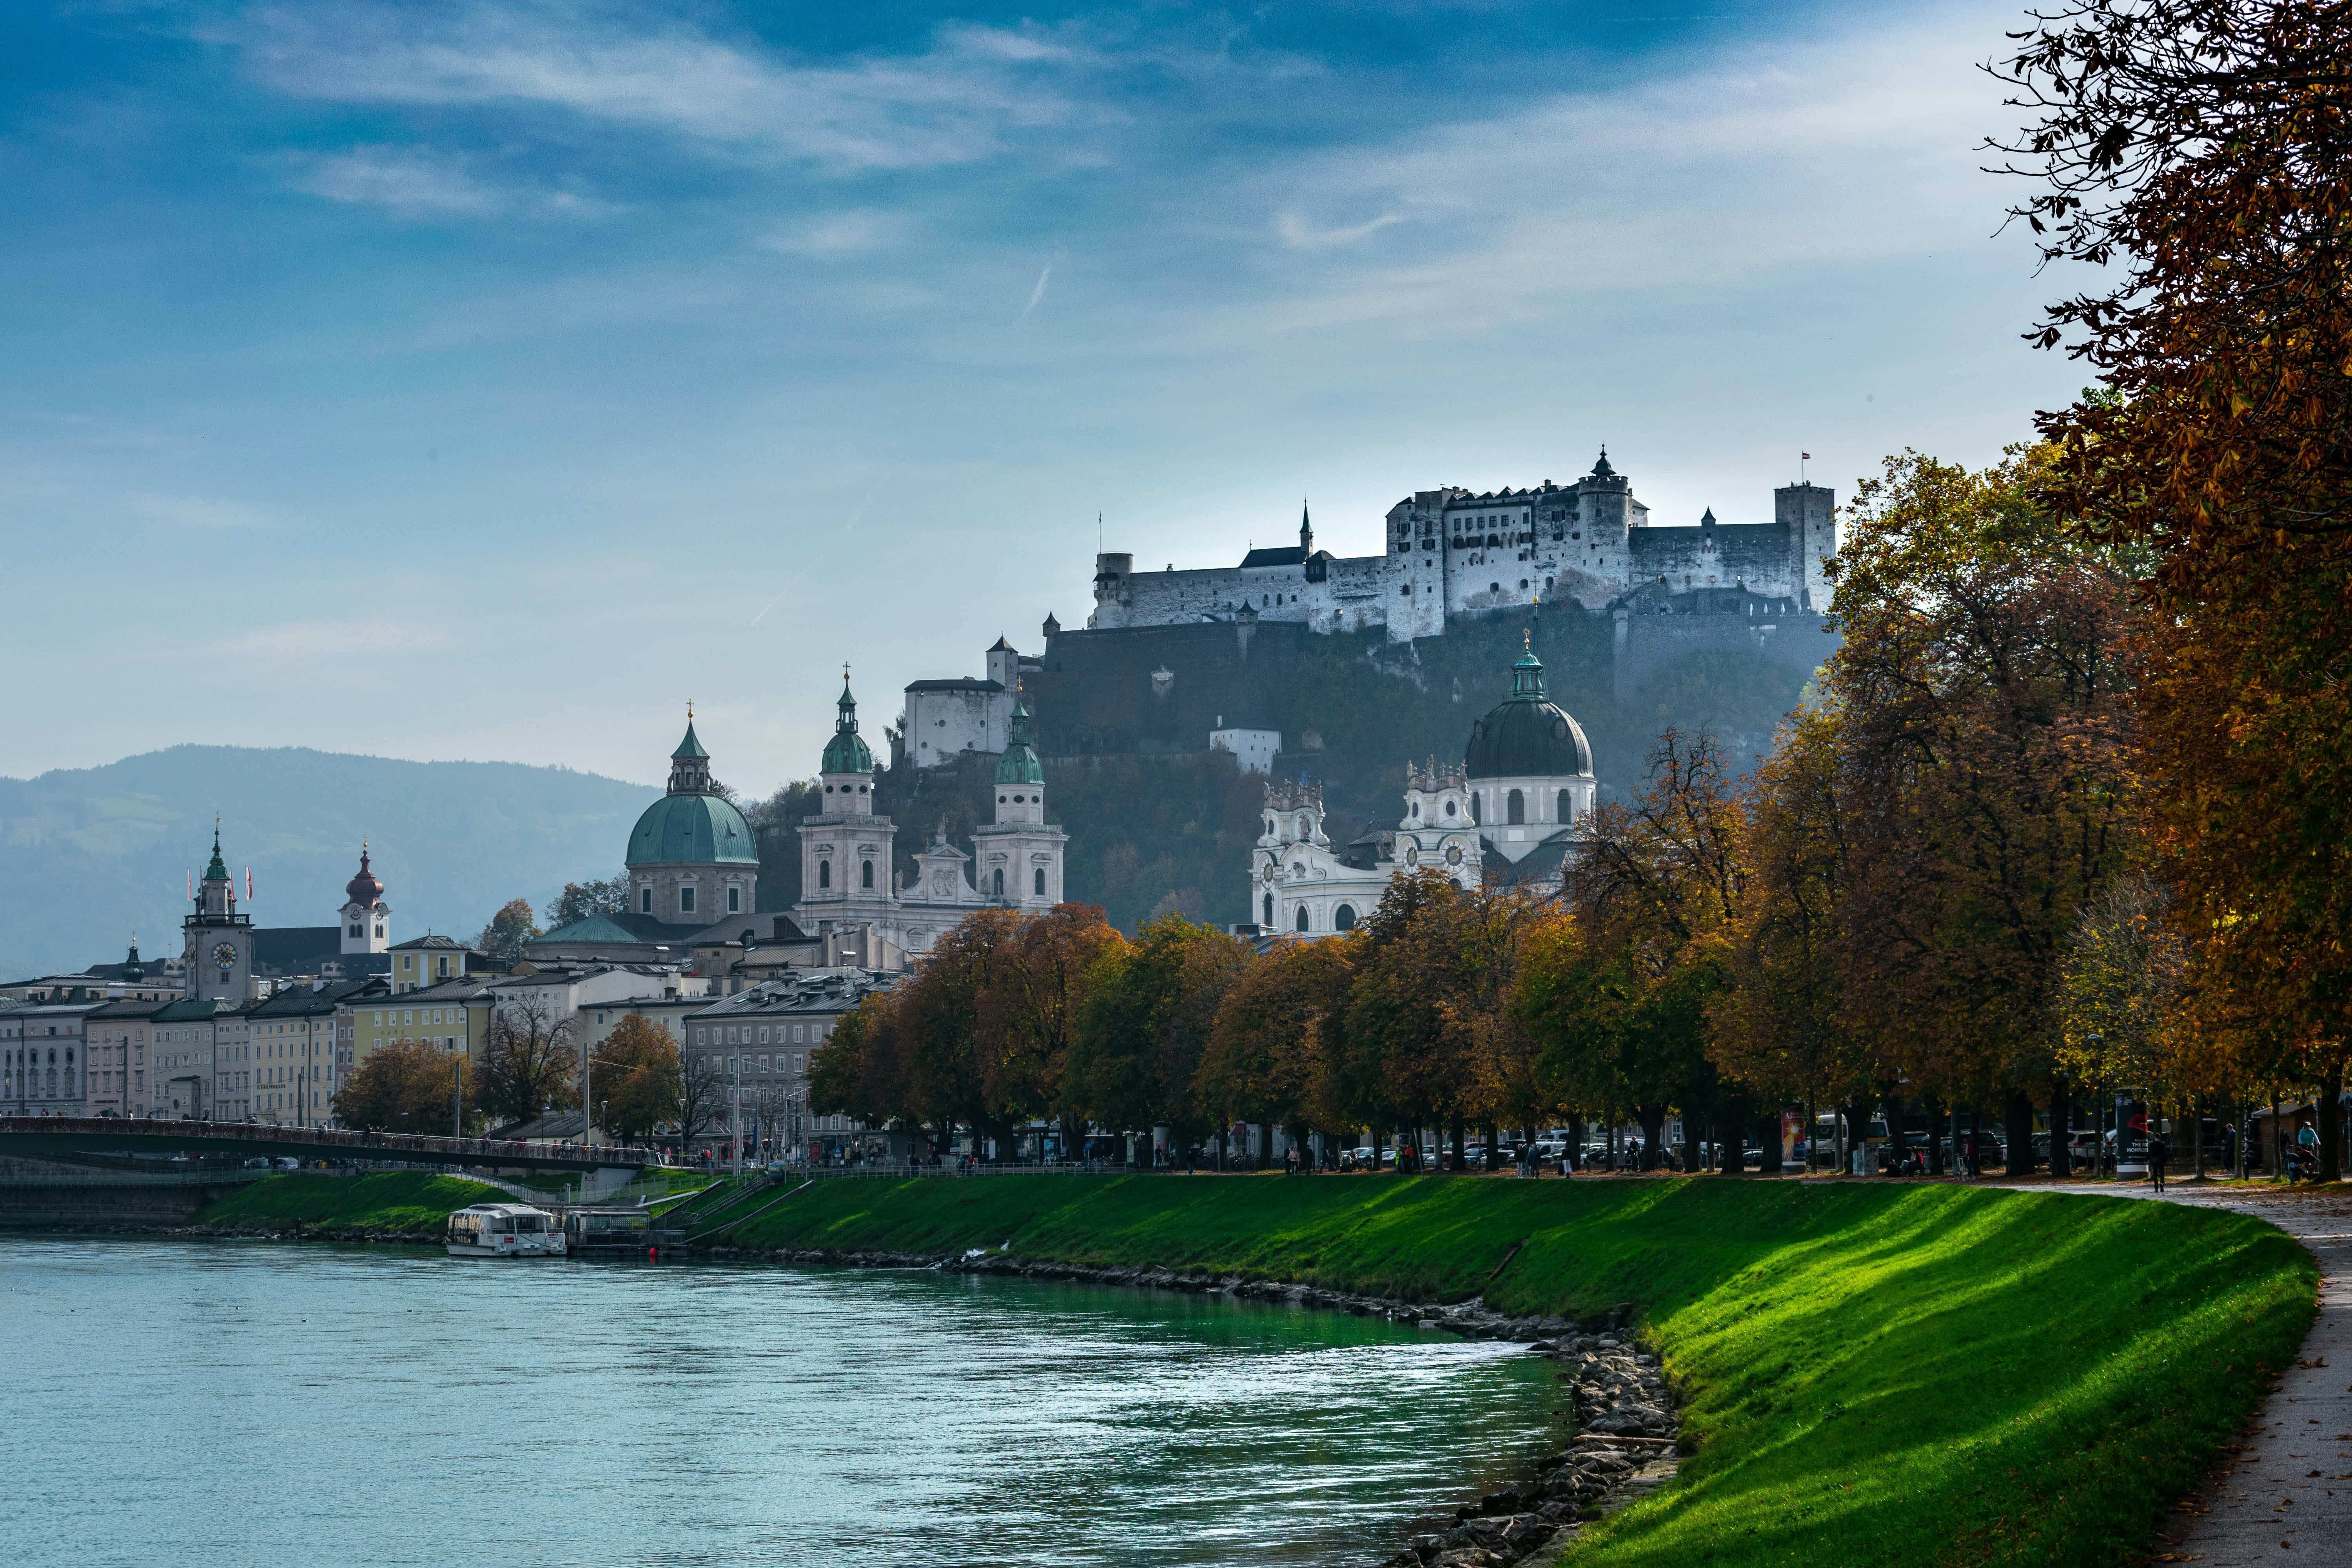 Erleben Sie die idyllische Schönheit von Nußdorf am Haunsberg in Salzburg. Entdecken Sie Lebensqualität und regionale Vorzüge im Salzburger Land.